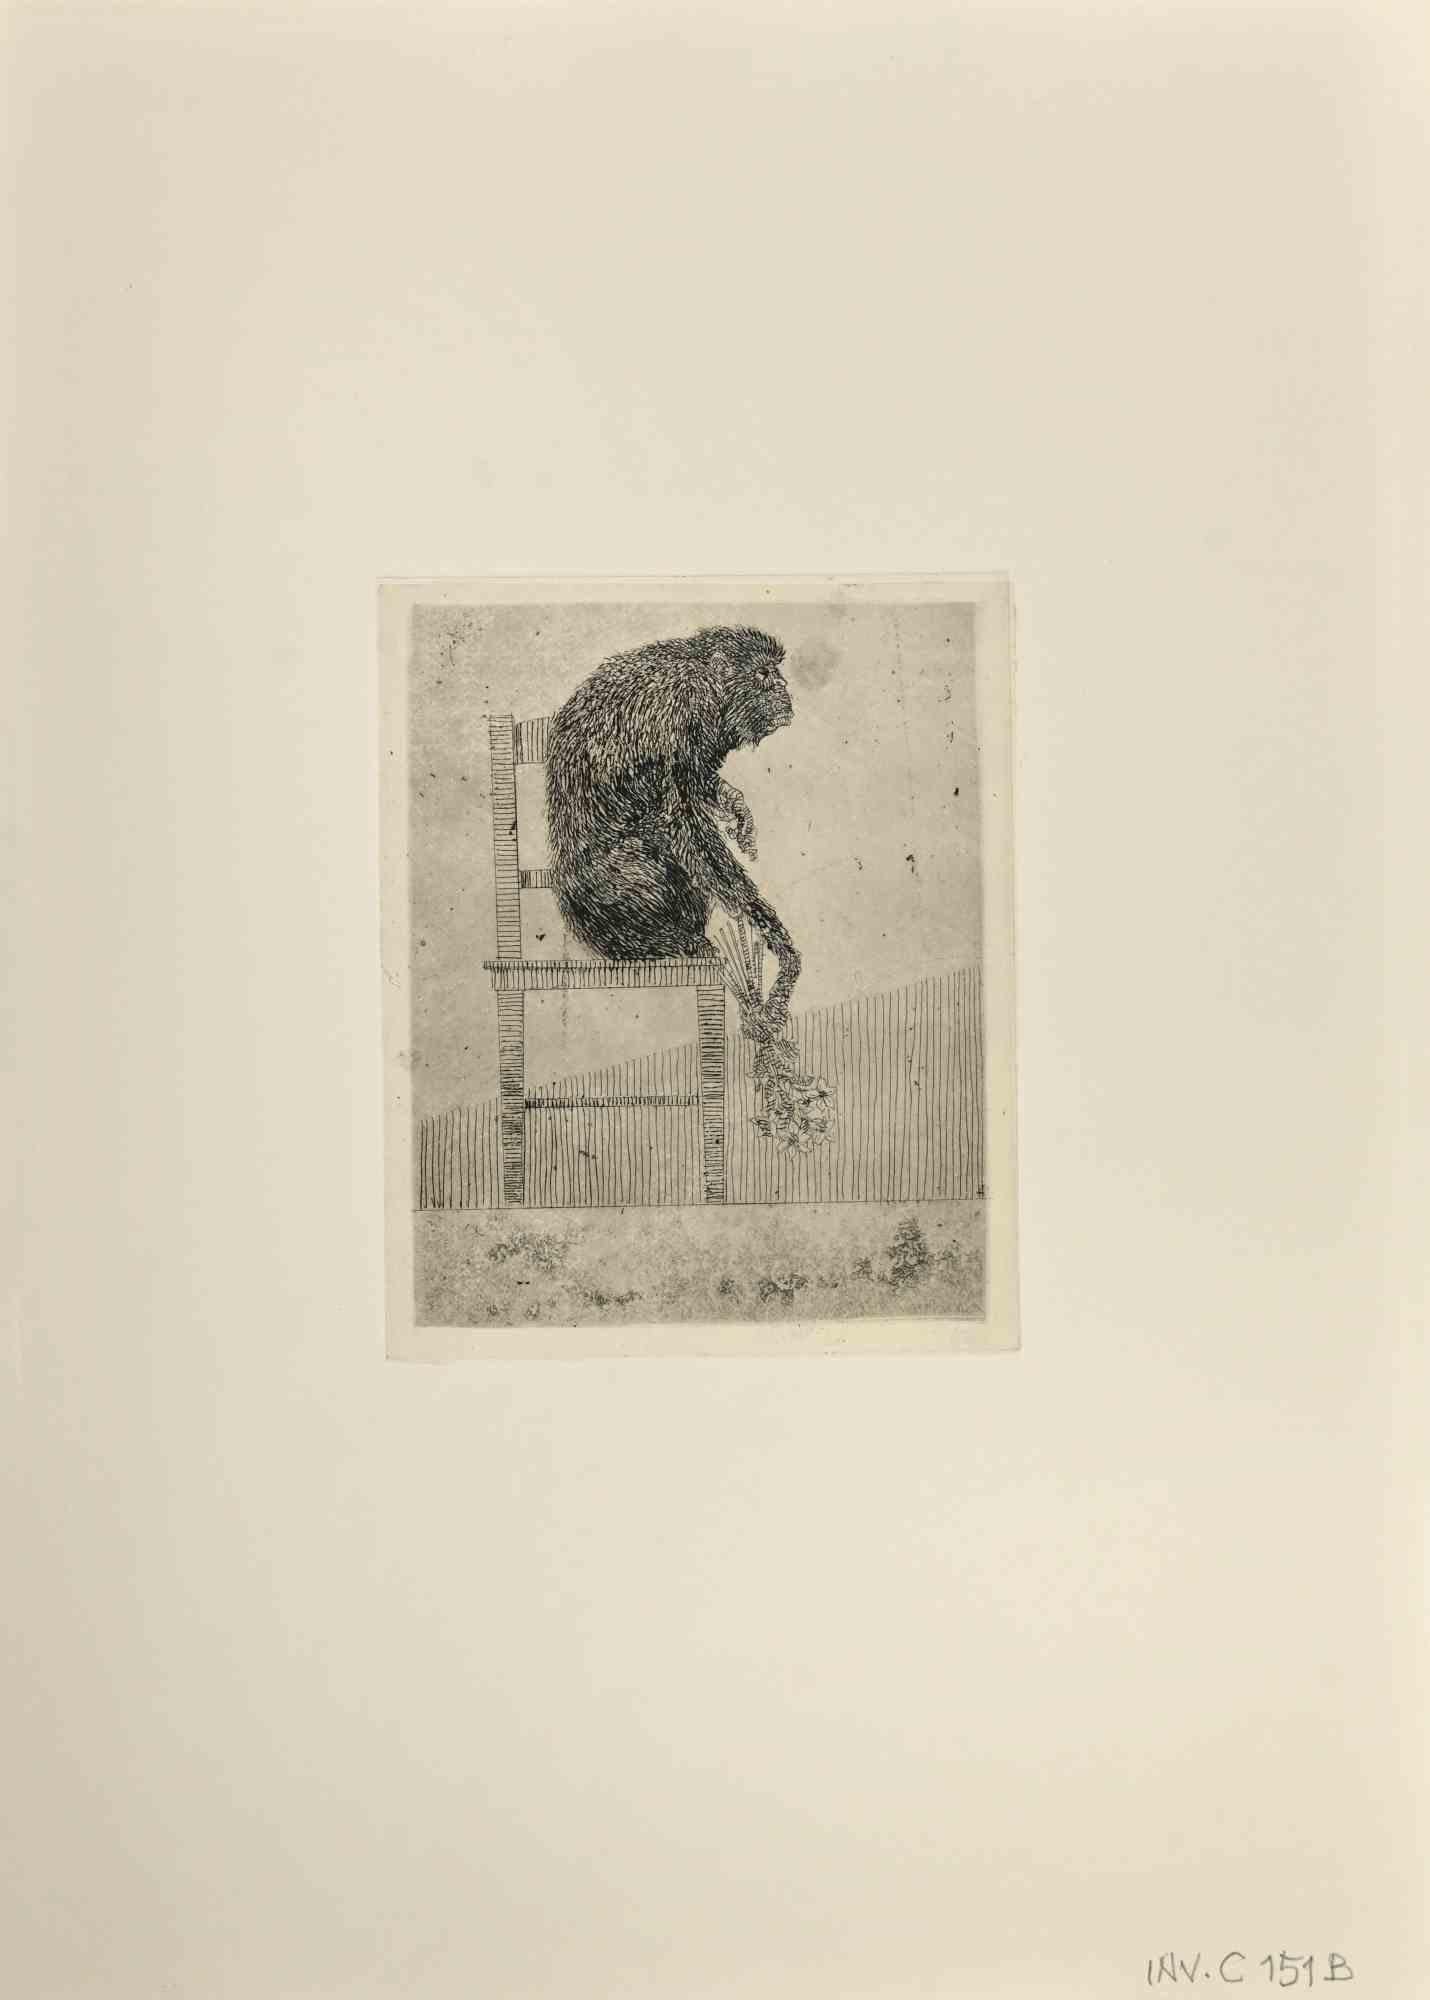 Monkey ist ein Kunstwerk des zeitgenössischen italienischen Künstlers  Leo Guida (1992 - 2017) in den 1970er Jahren.

Original-Radierung in Schwarz-Weiß auf Papier.

Gute Bedingungen.

Leo Guida  (1992 - 2017). Mit seinem Gespür für aktuelle Themen,